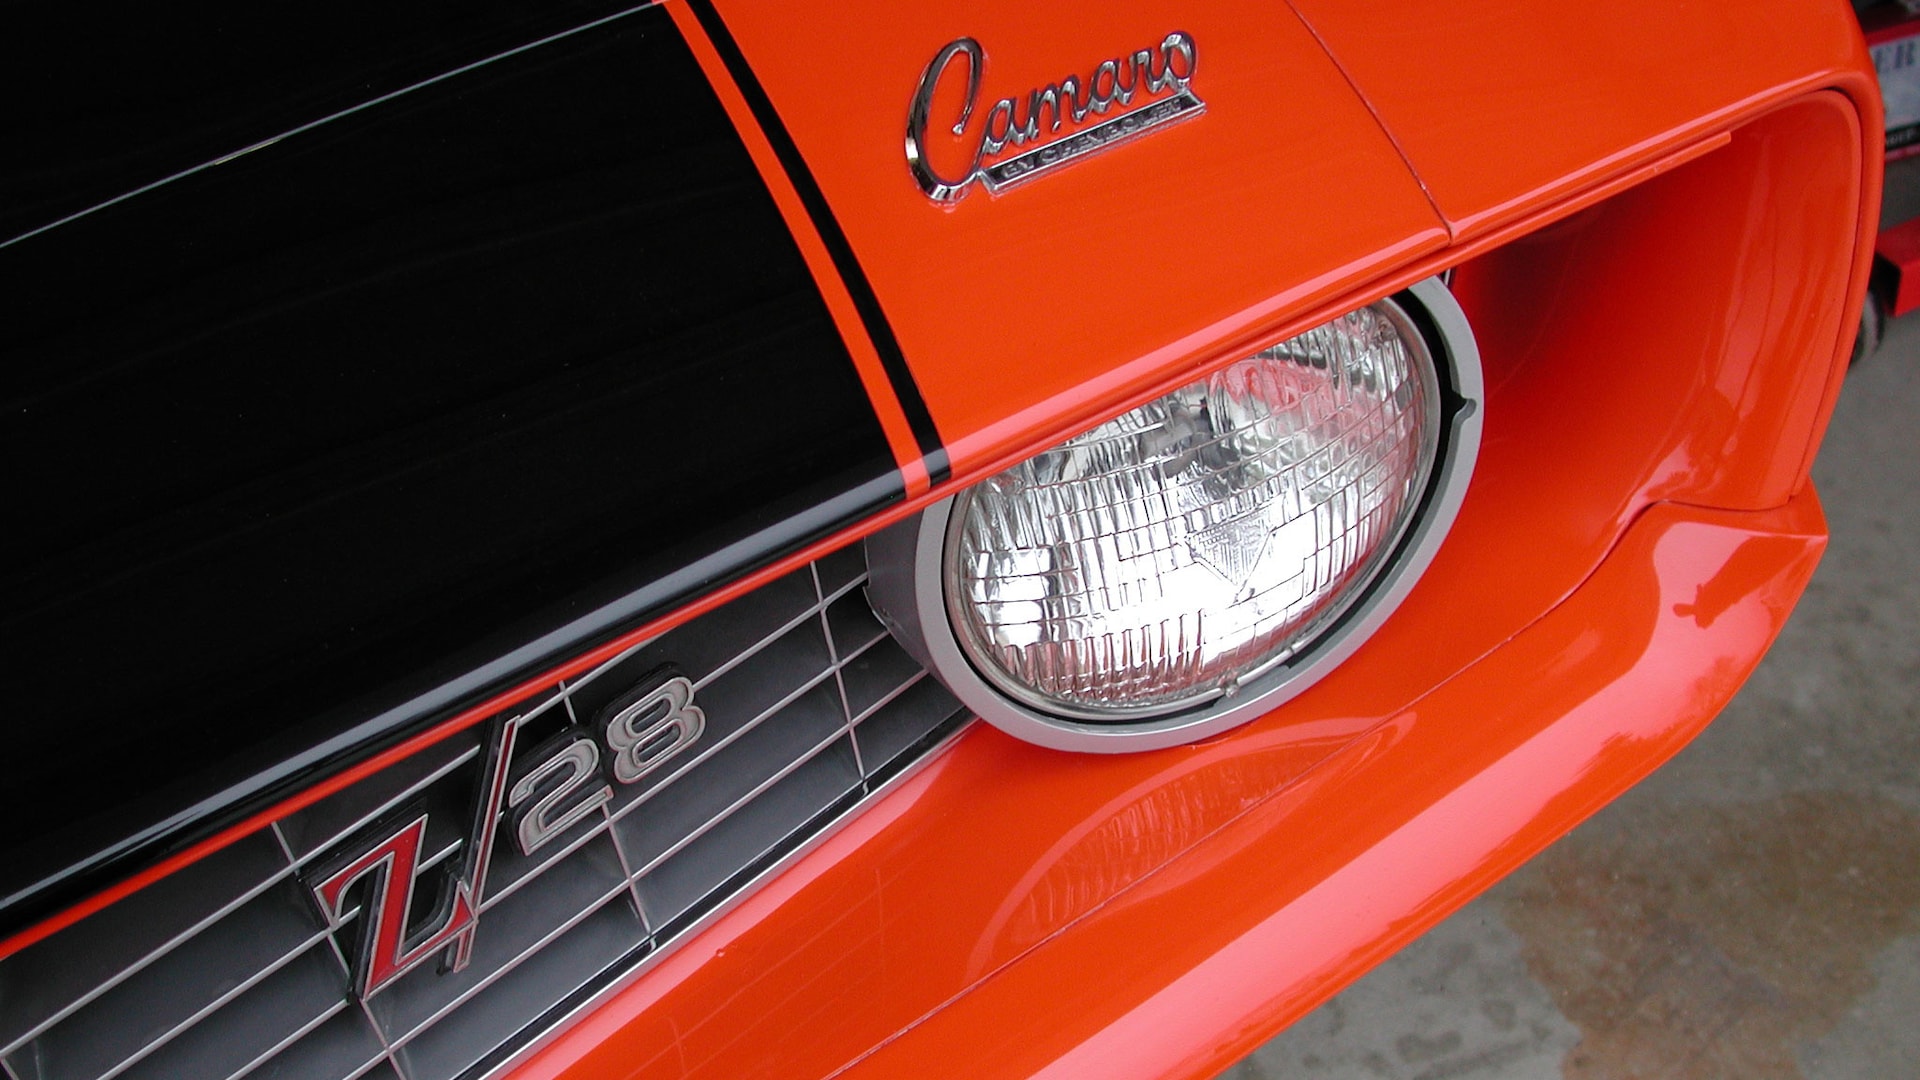 118 1969 Camaro Z28 front hood and grille emblem orange